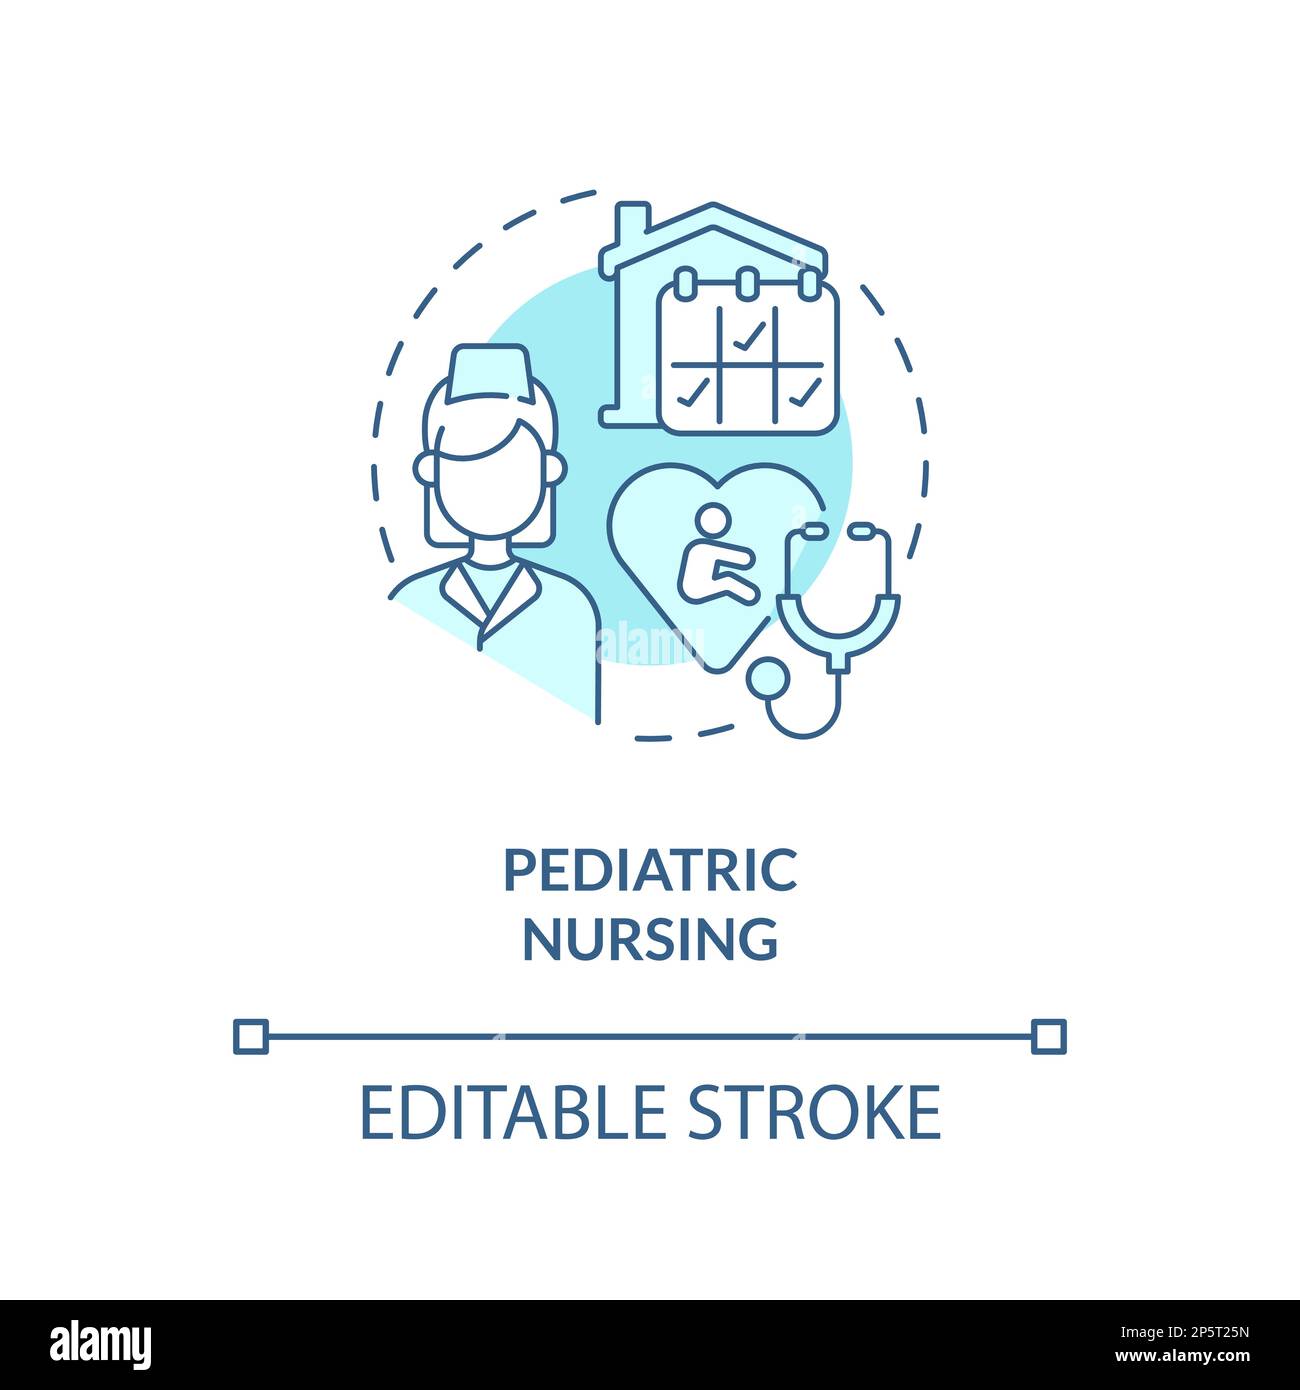 Pediatric nursing blue concept icon Stock Vector